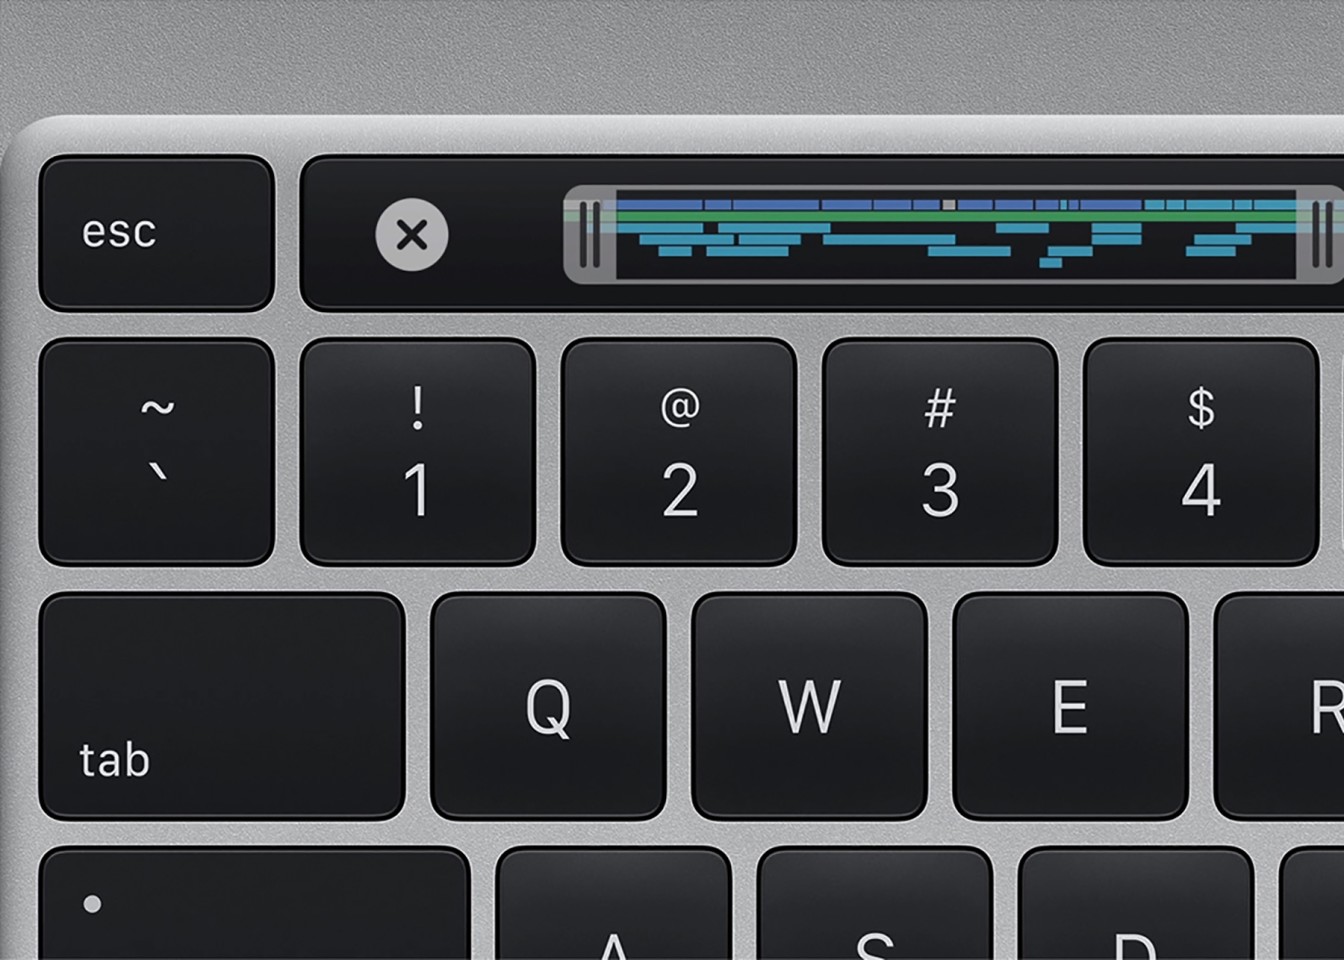 Apple утверждает что проблемы с клавиатурой на их новых Mac Book Pro полностью исправлены цена, харакеристики